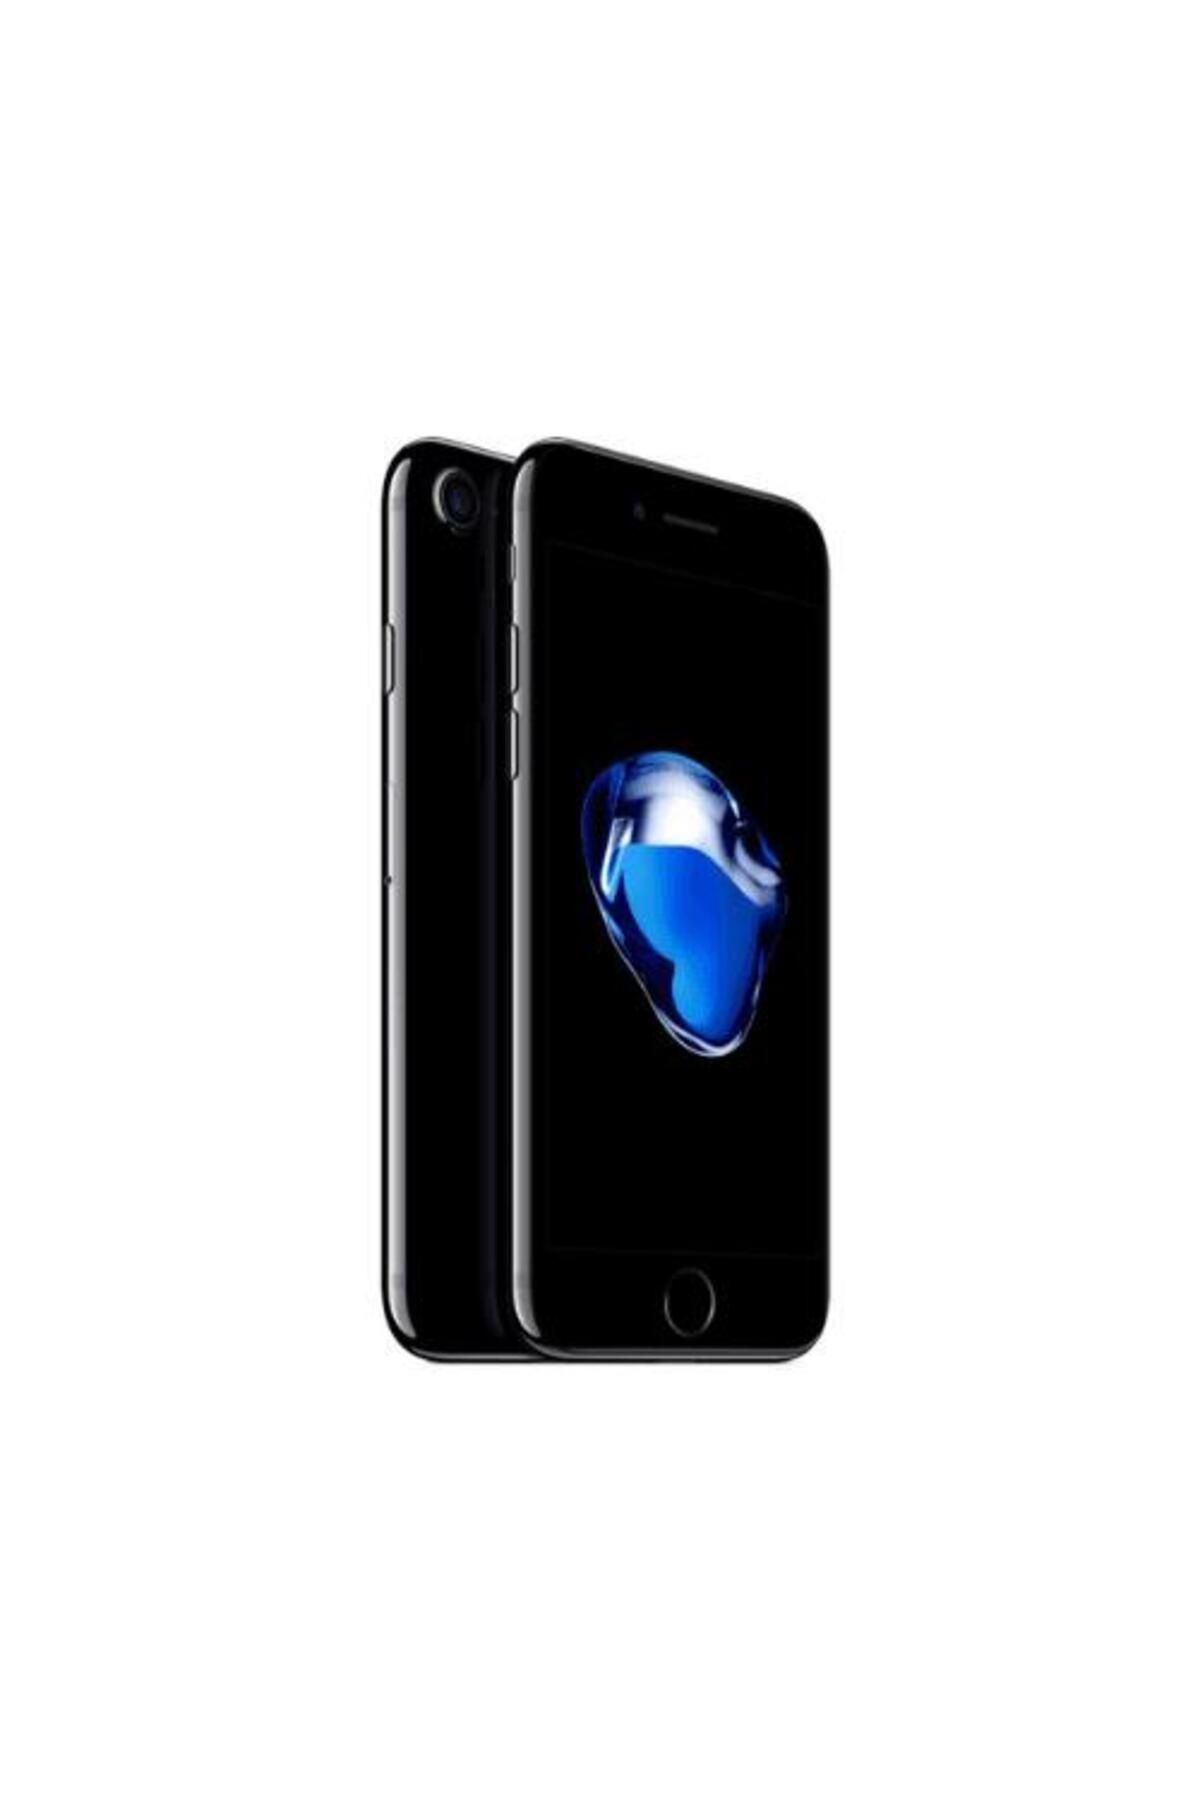 Apple Yenilenmiş IPHONE 7 128GB -C Kalite- Koyu Siyah